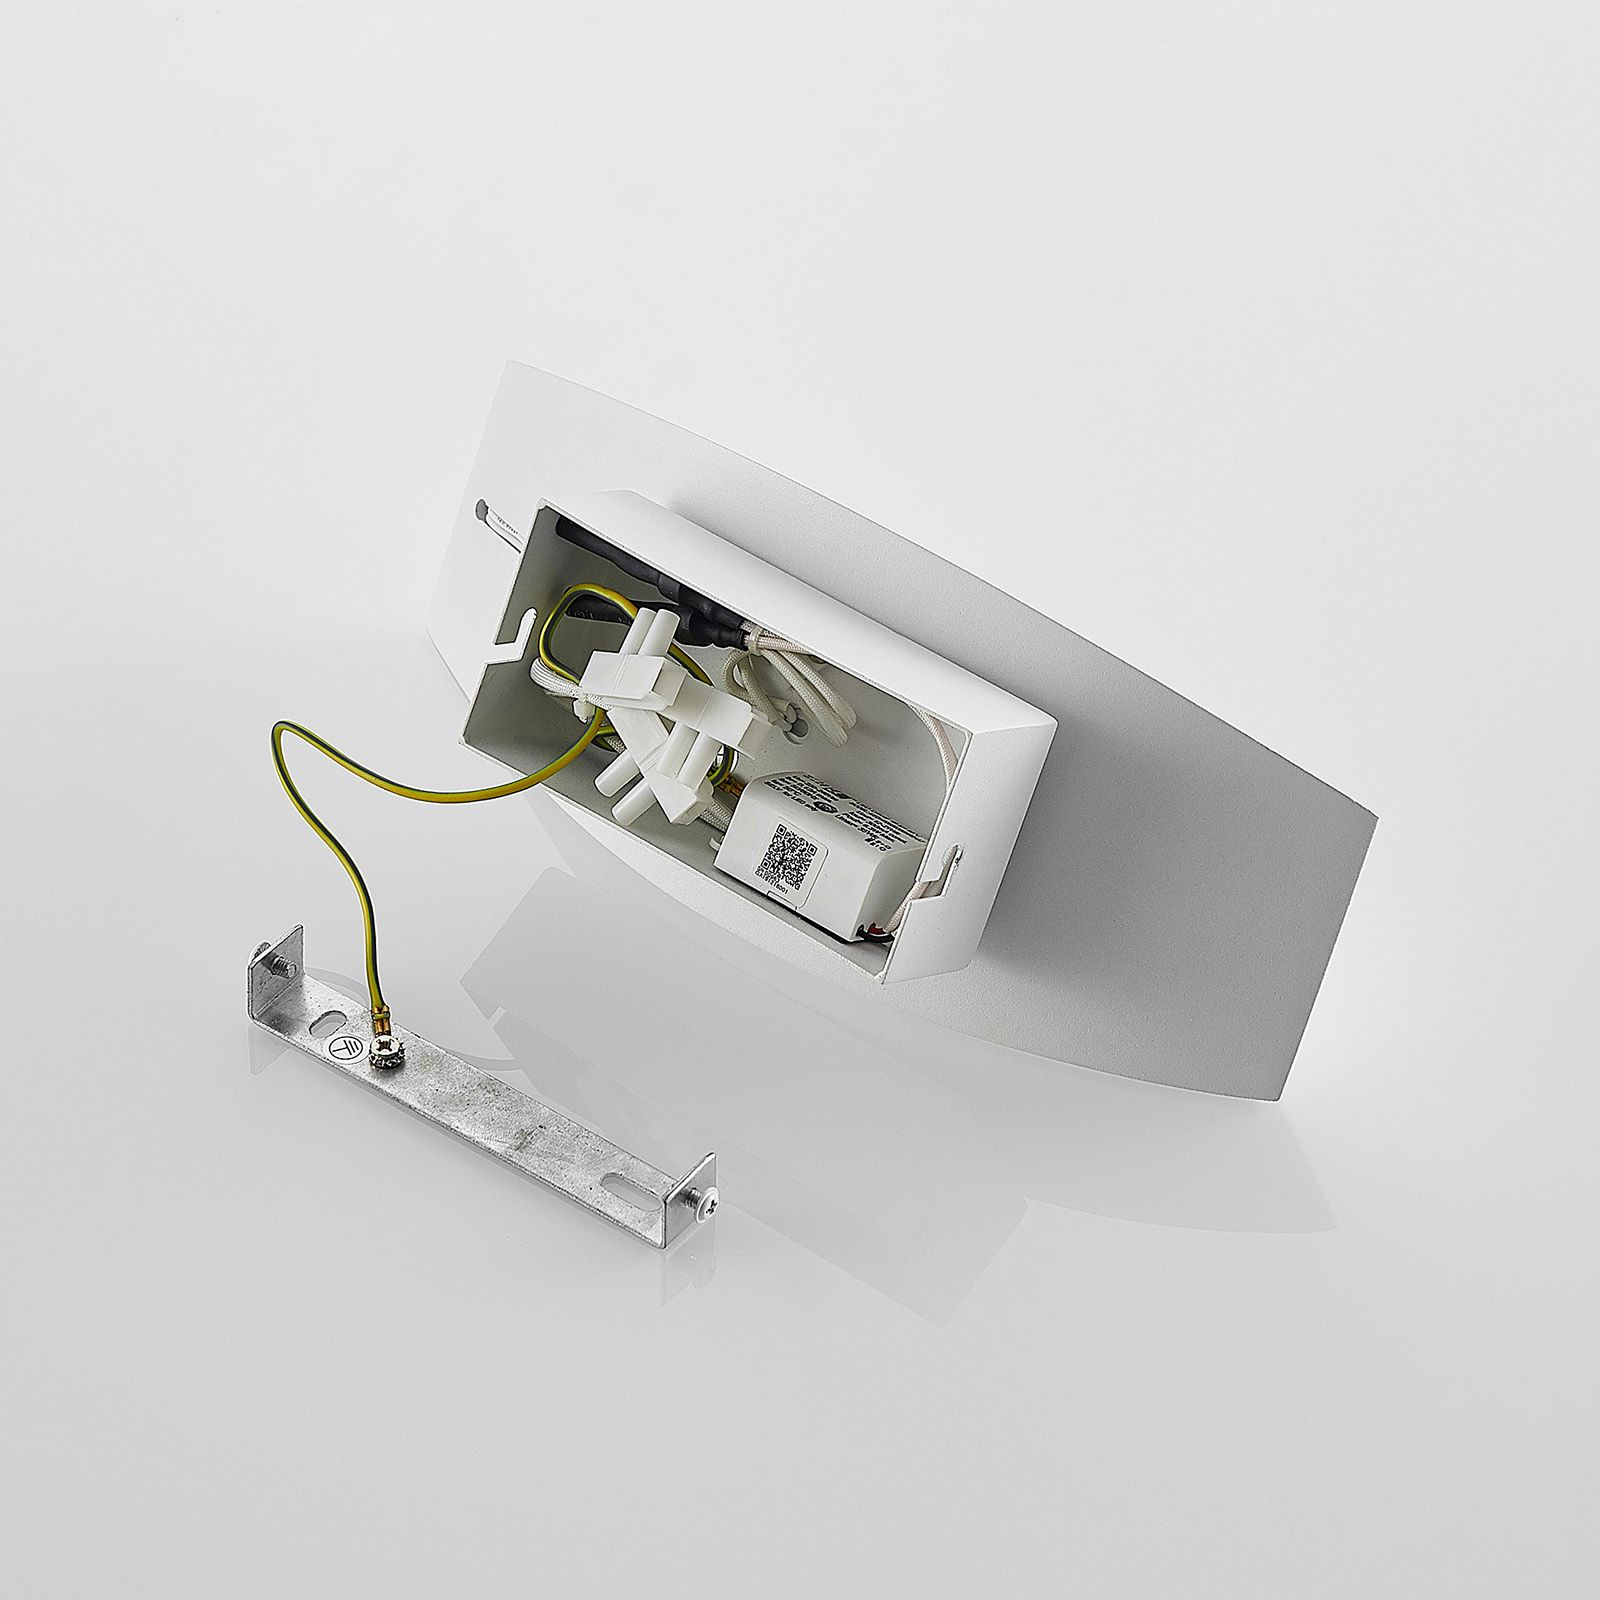 Arcchio Jelle LED-Wandleuchte, 25 cm, weiß